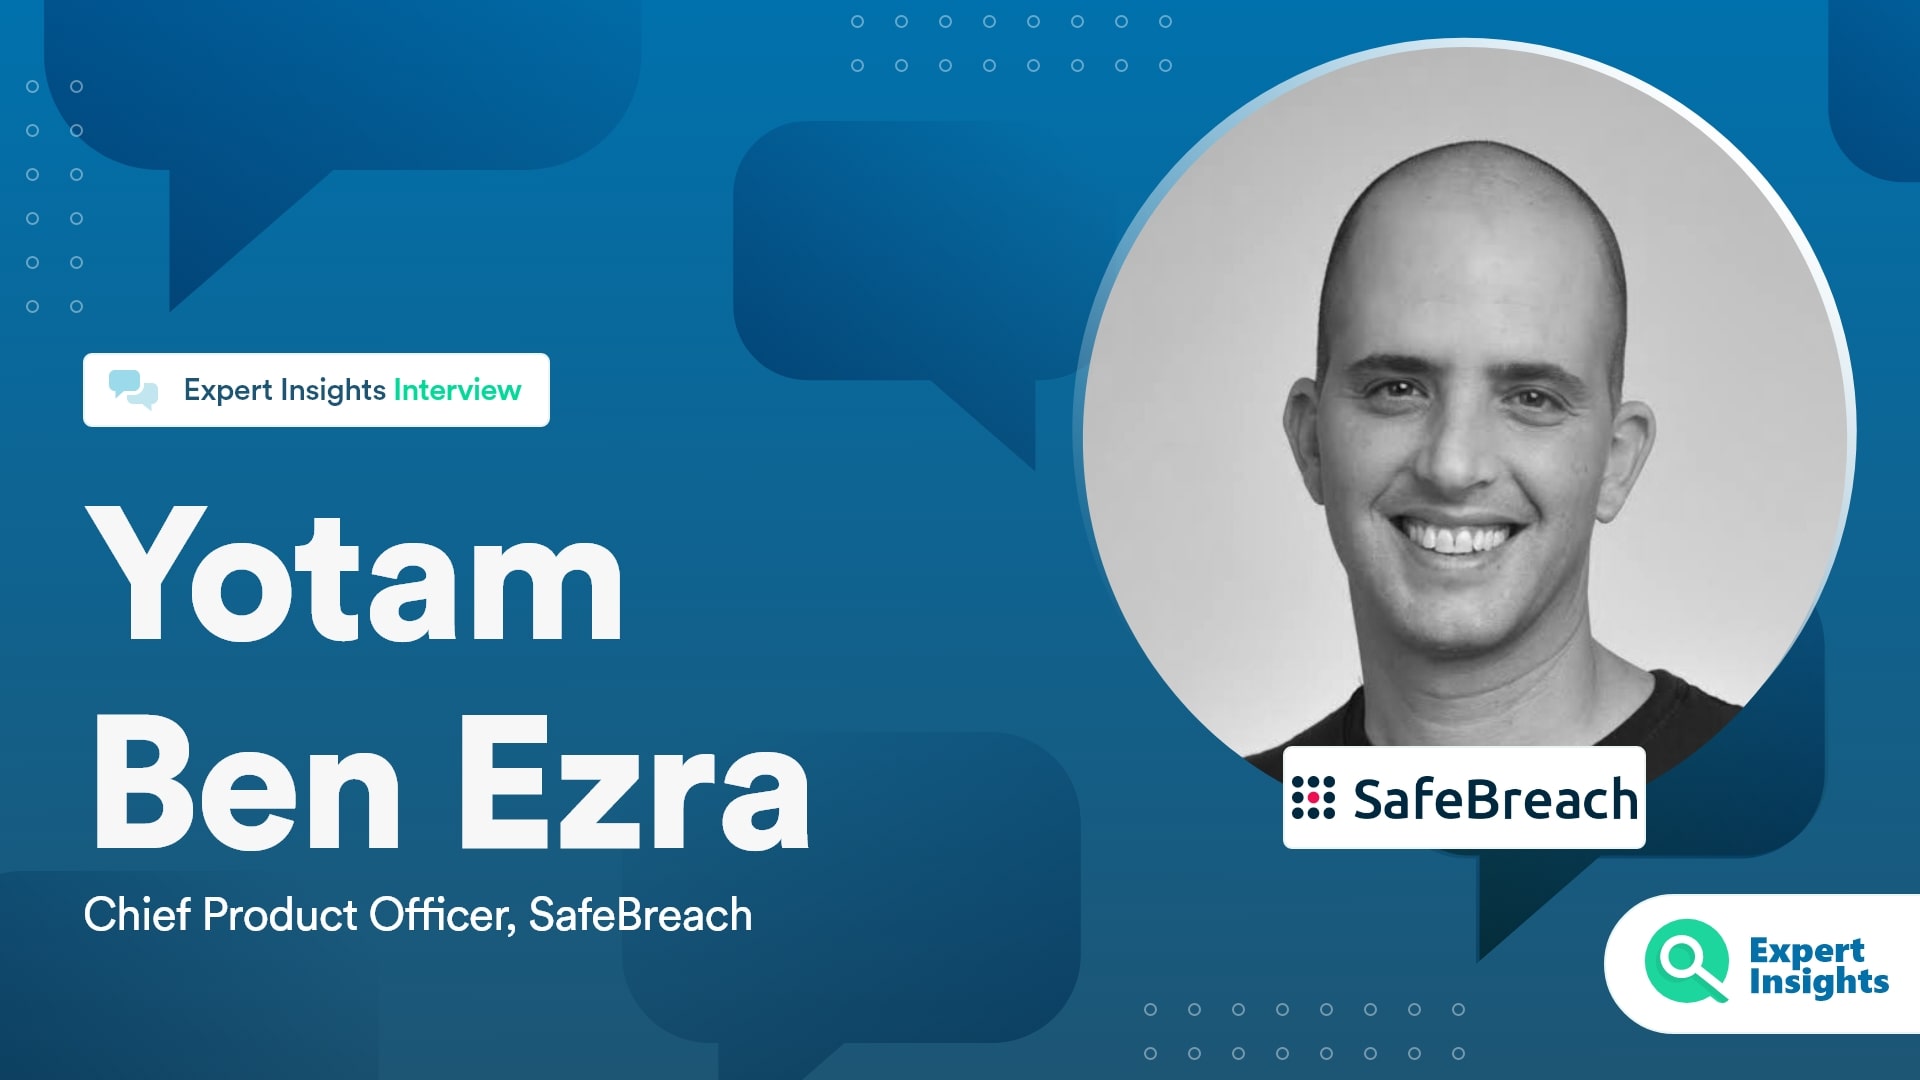 Expert Insights Interview With Yotam Ben Ezra Of SafeBreach